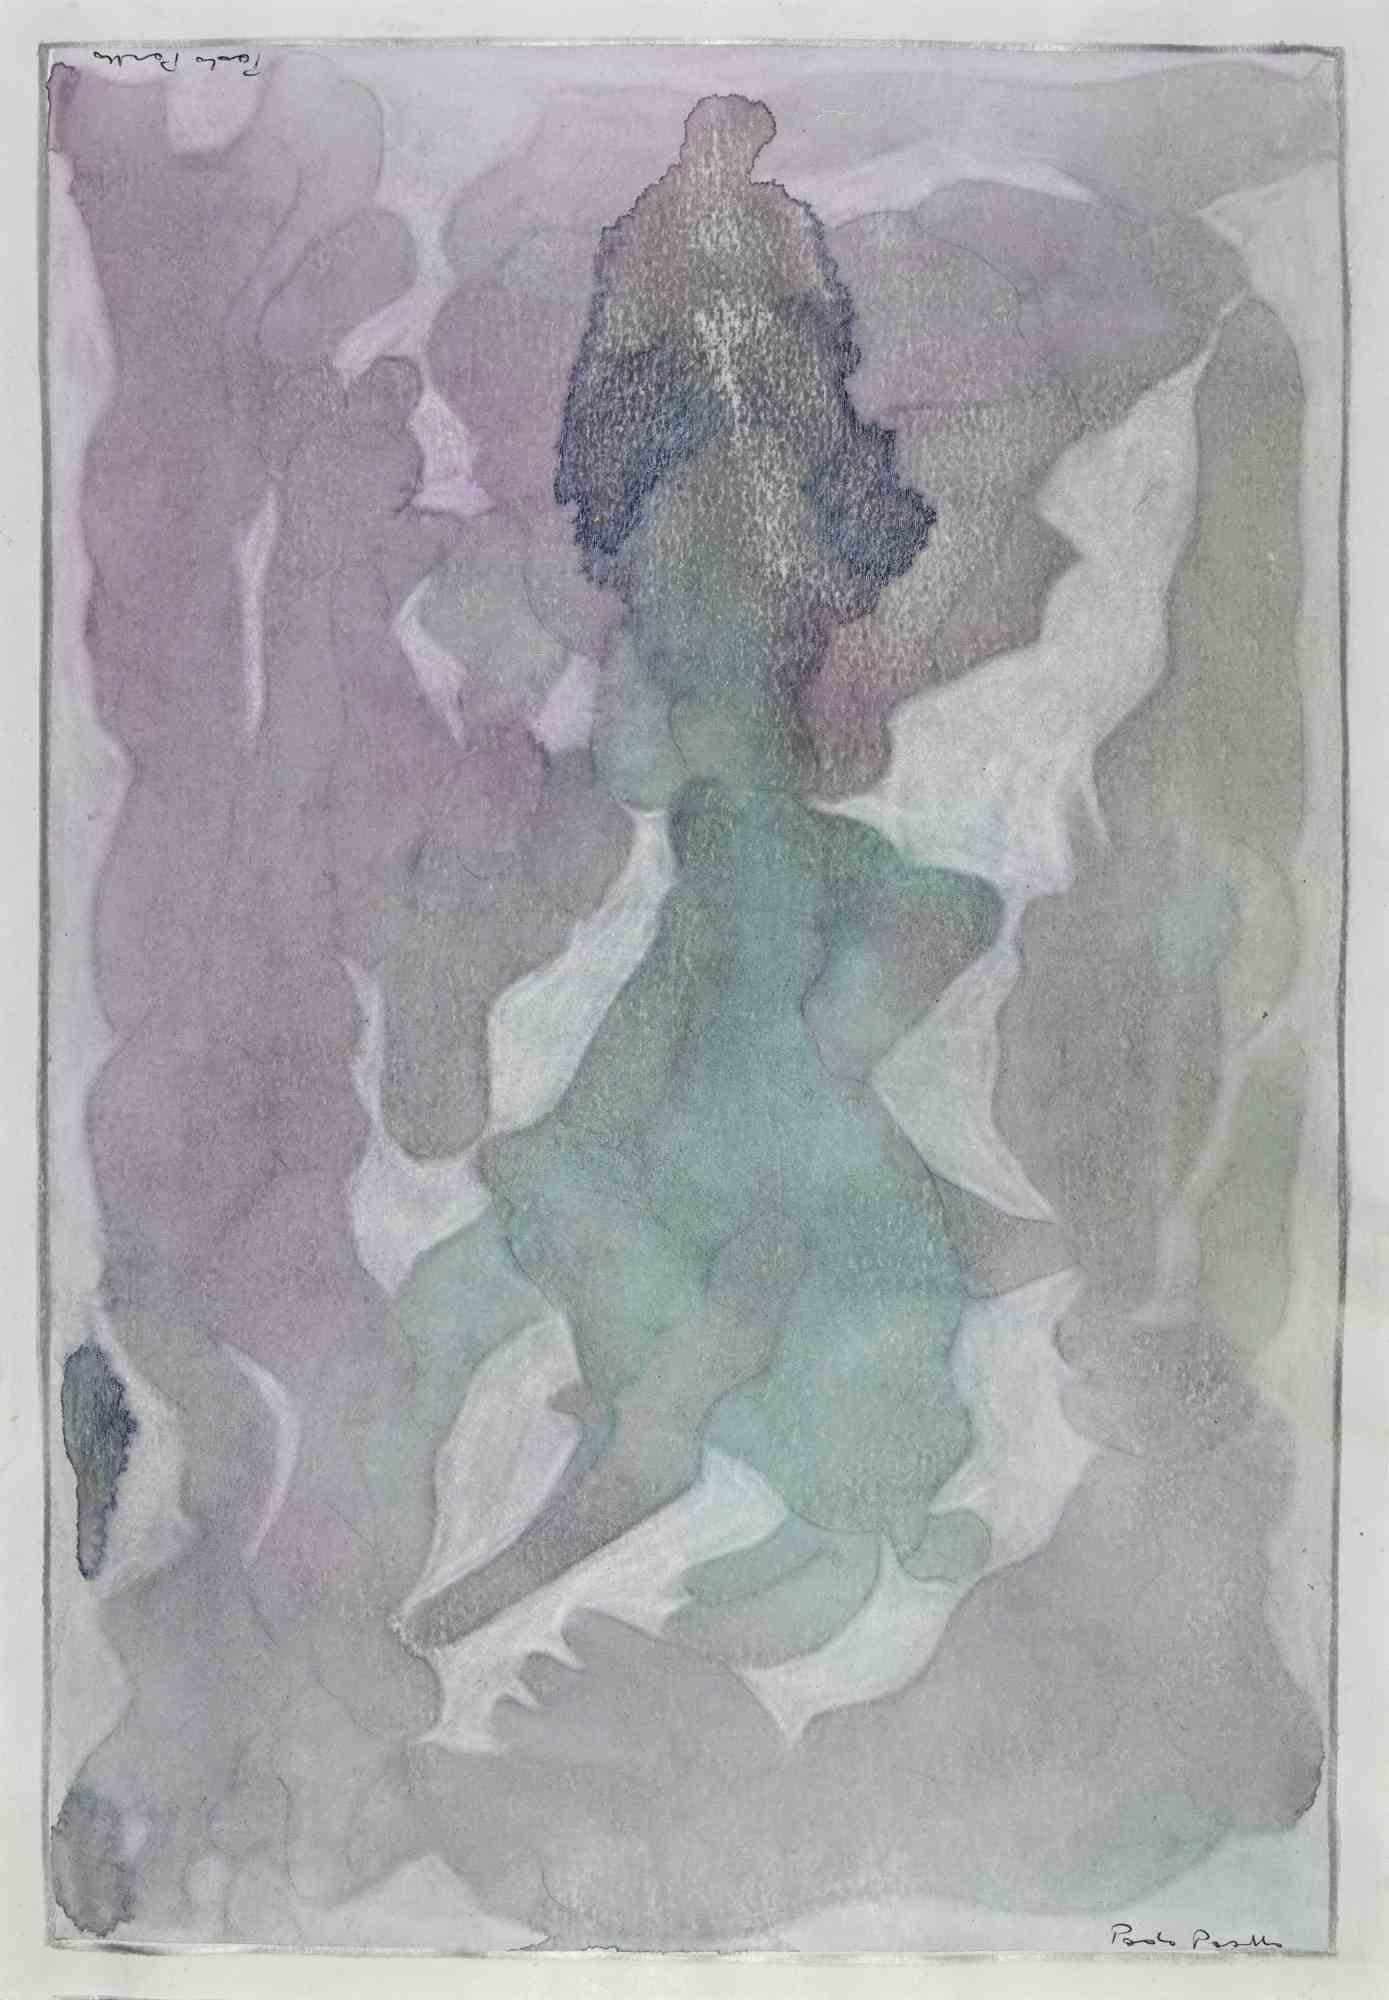 Abstrakte Komposition ist ein Kunstwerk von Paolo Pasotto aus dem Jahr 1996. 

50 x 35 cm.

Handsigniert auf beiden kurzen Seiten.

Gemischte Technik auf Papier.

Gute Bedingungen. 